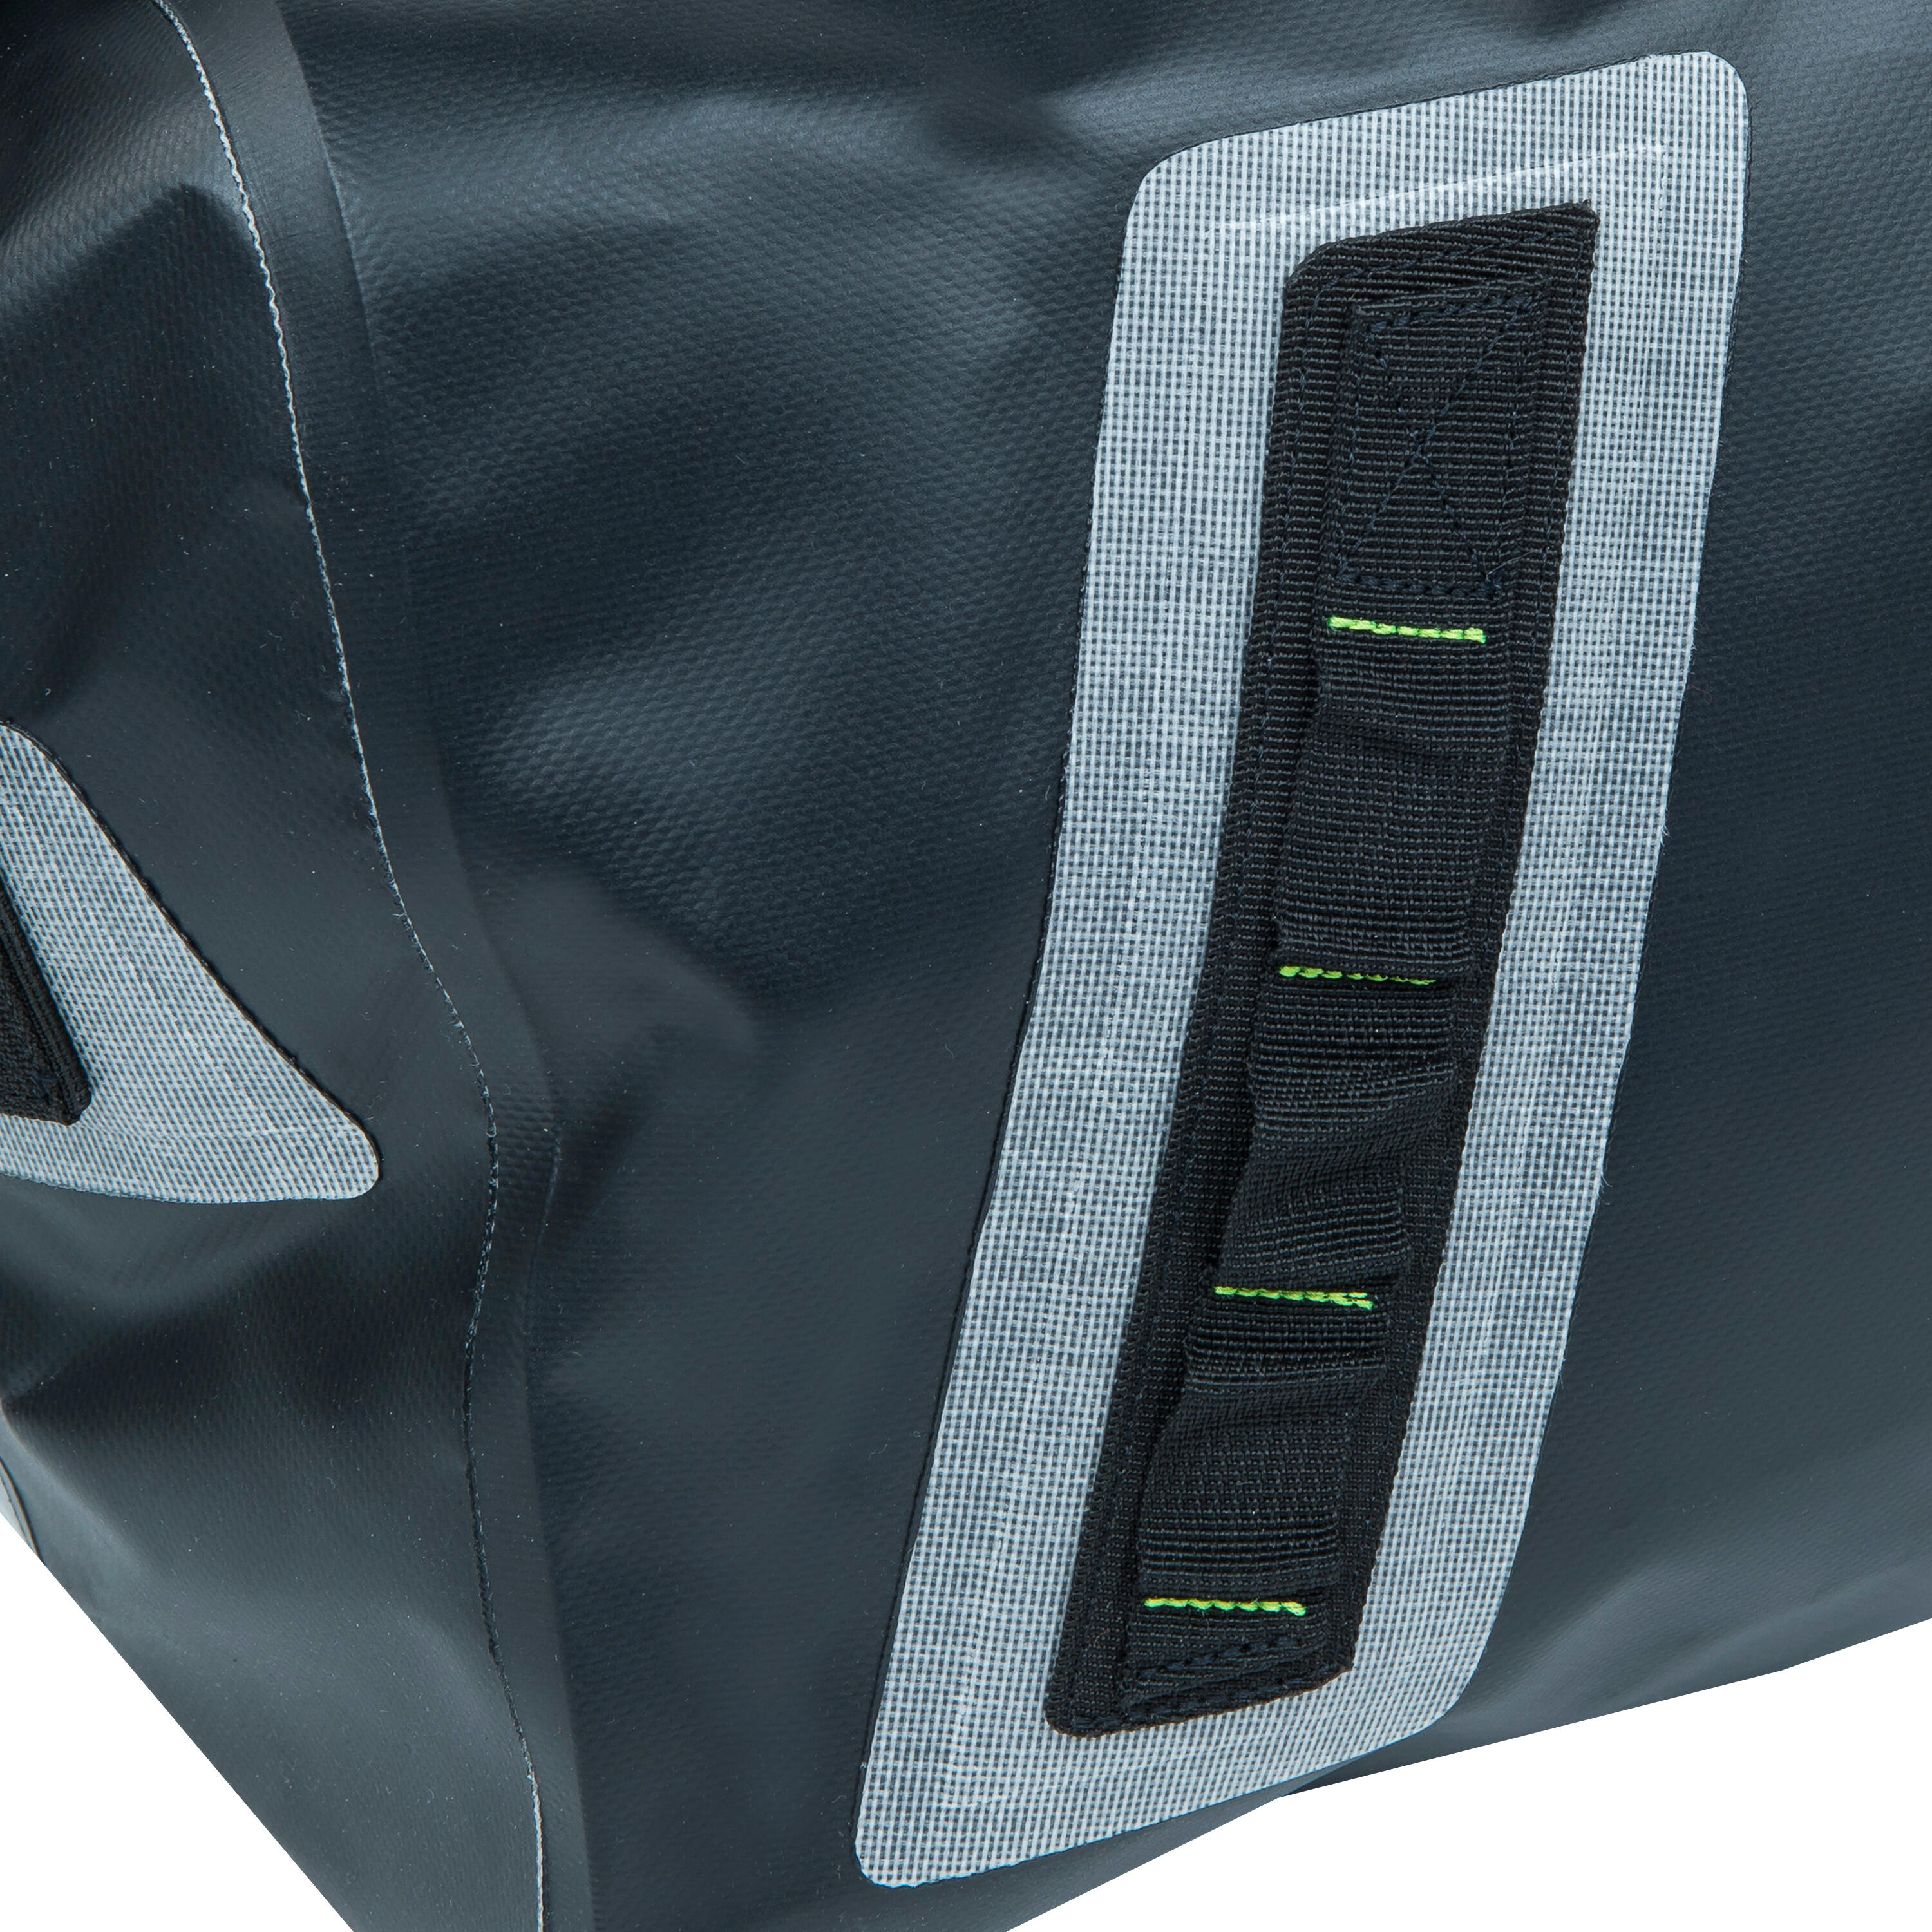 Waterproof duffle bag - travel bag 60 L black 5/8